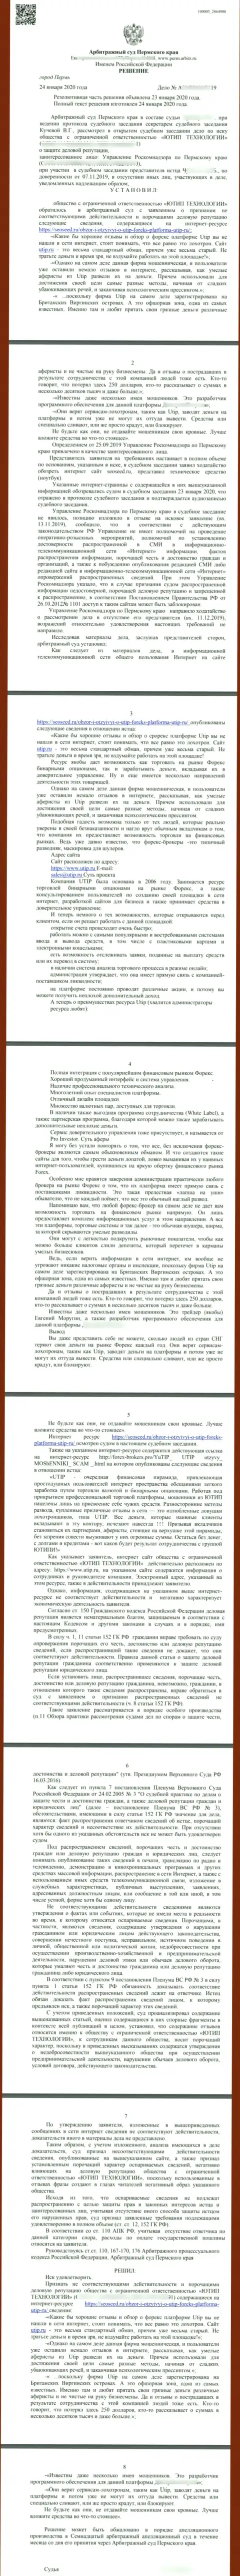 Судебный иск мошенников UTIP Ru, который оказался удовлетворенным самым справедливым судом в мире